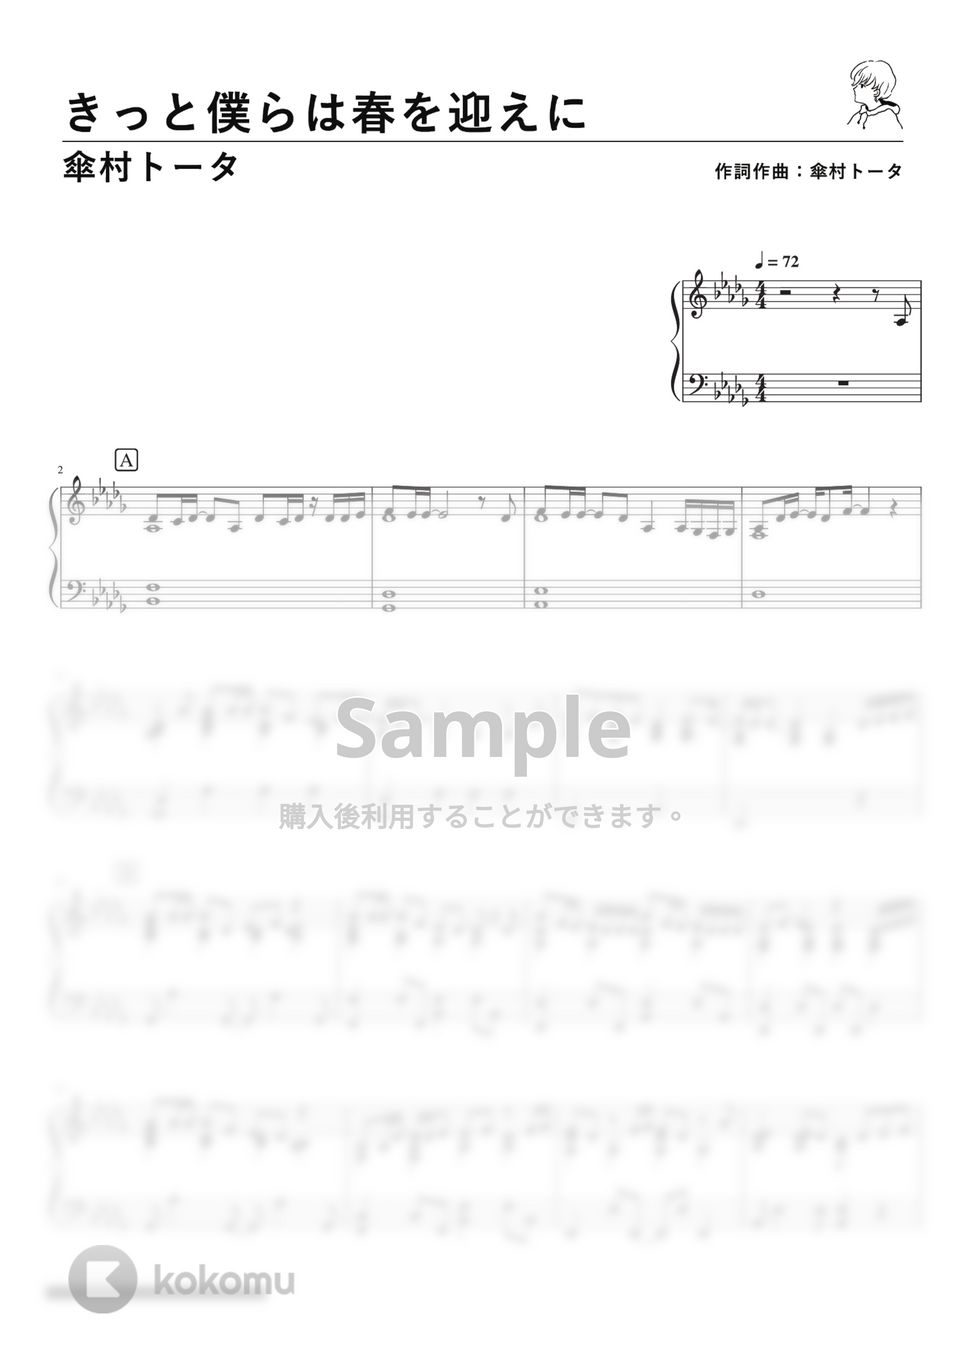 傘村トータ - きっと僕らは春を迎えに (PianoSolo) by 深根 / Fukane